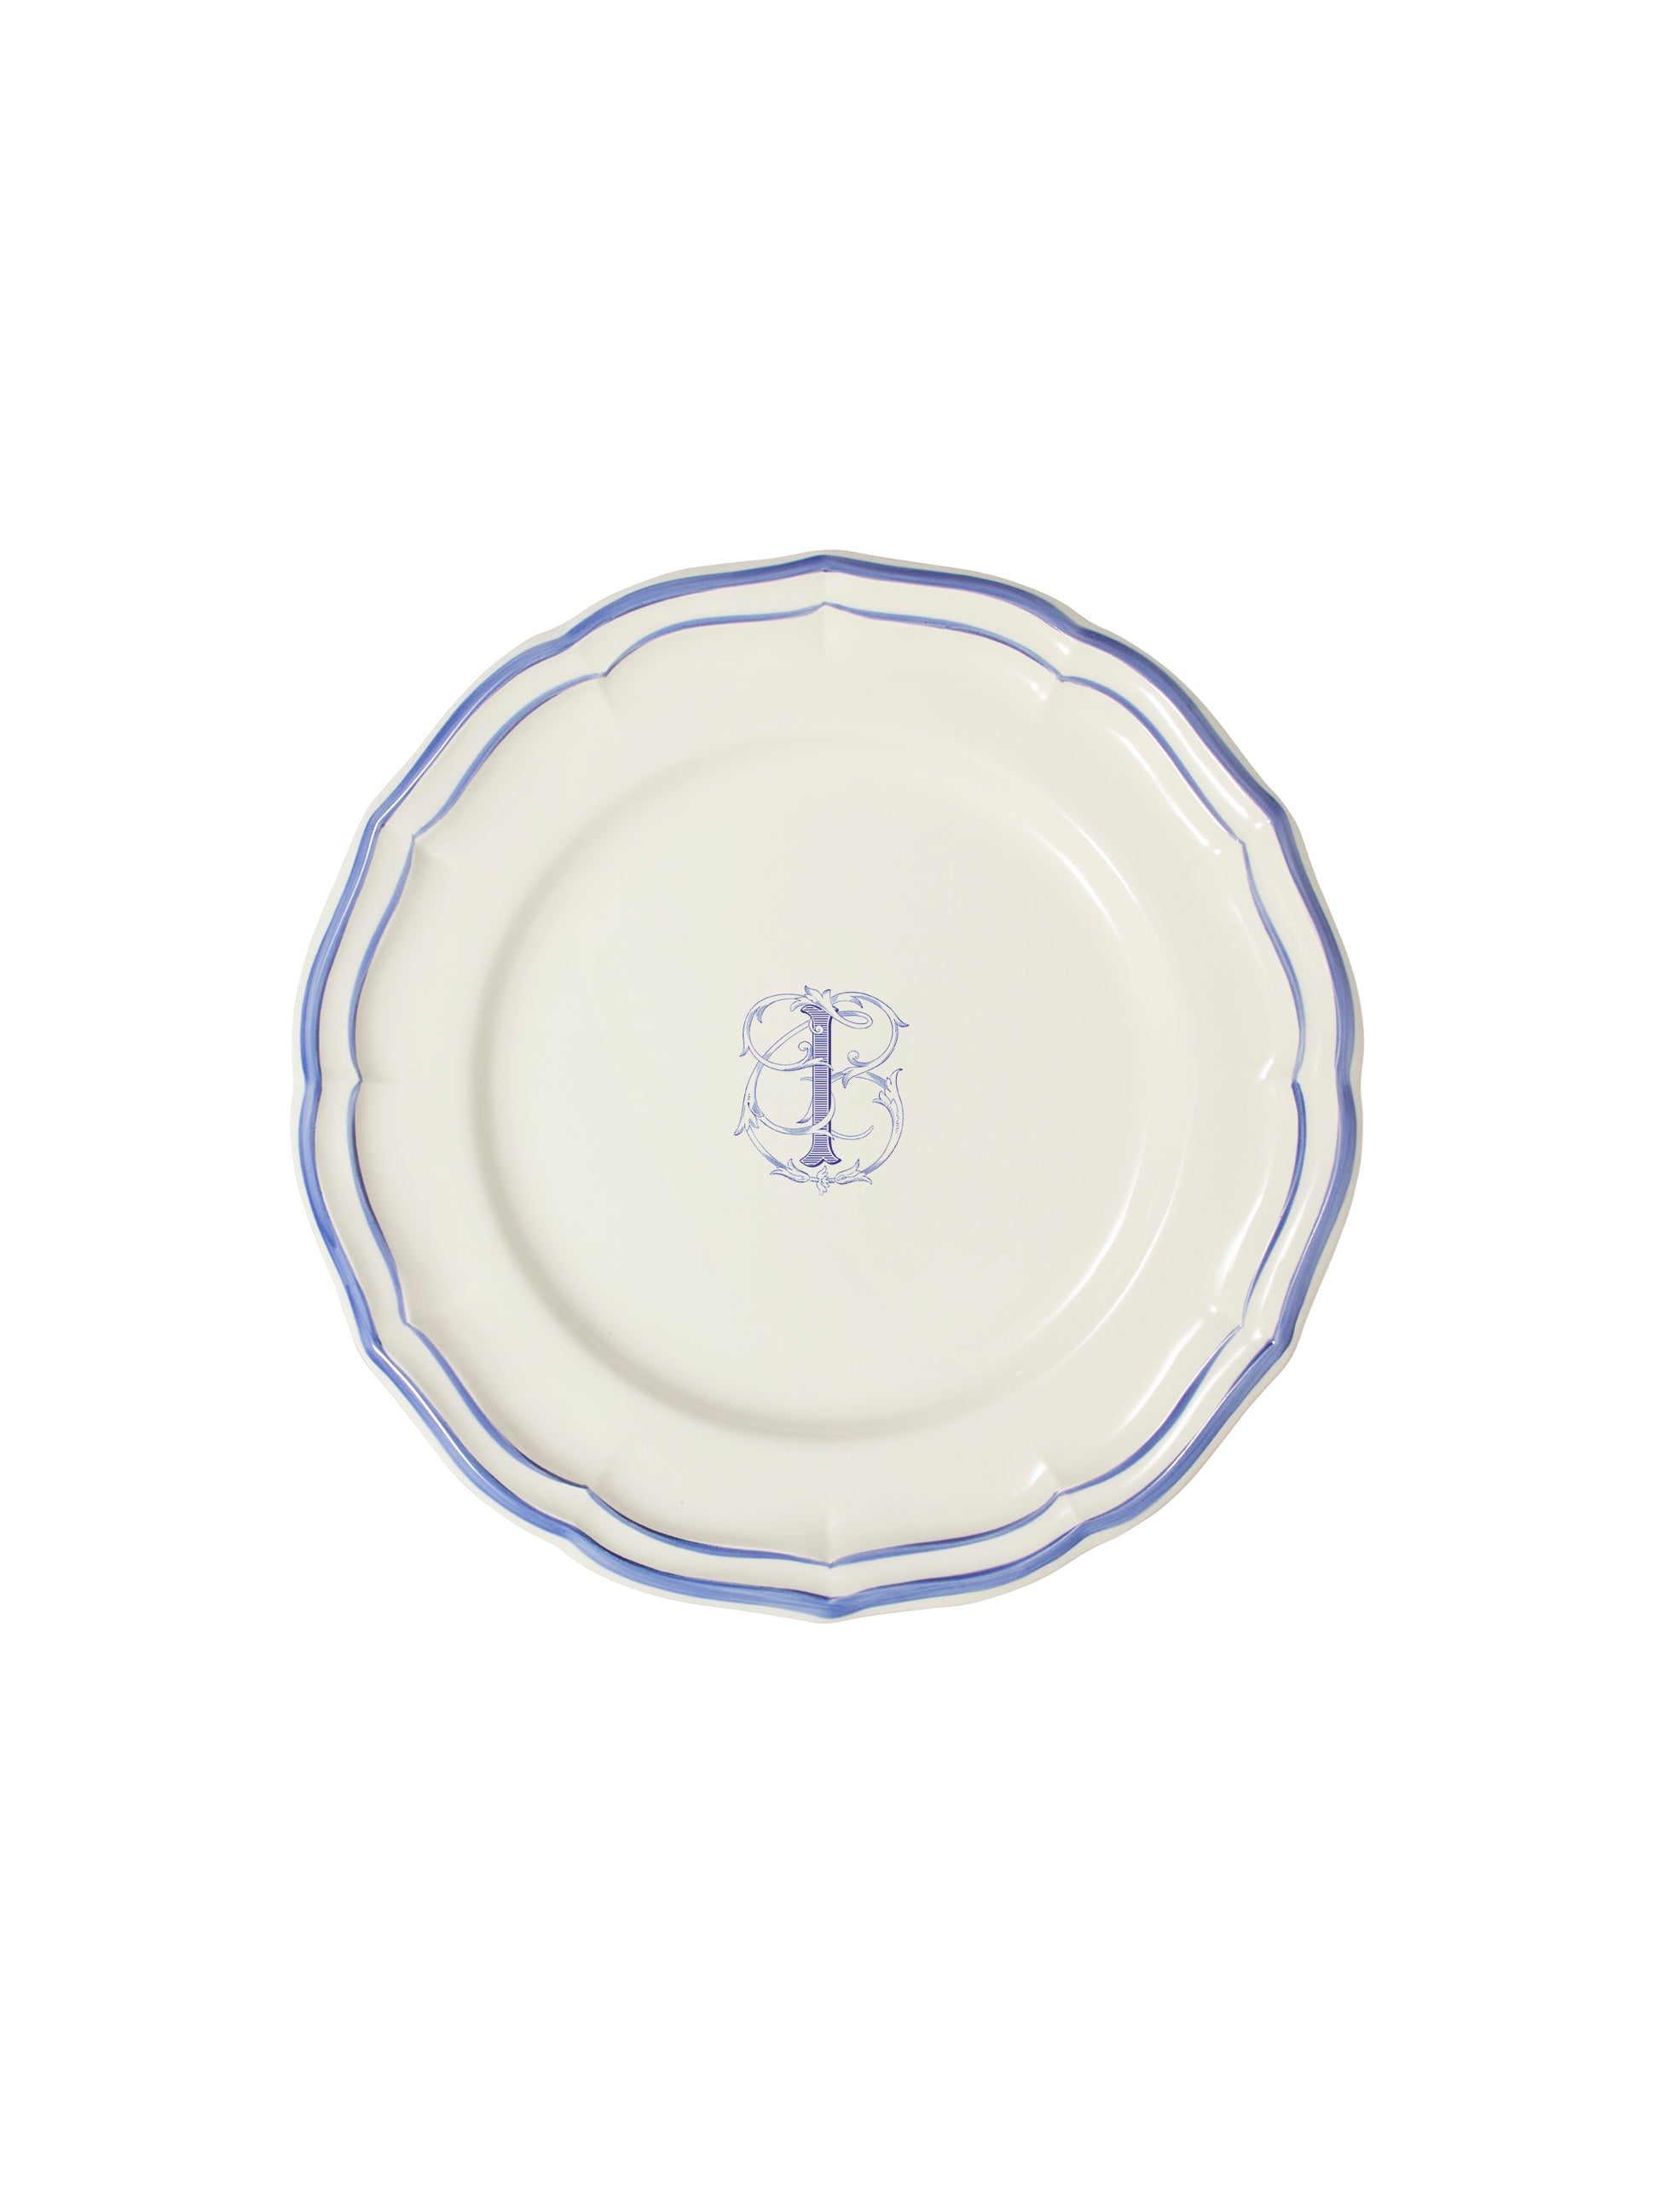 Gien Filet Bleu Monogram Salad Plate I Weston Table